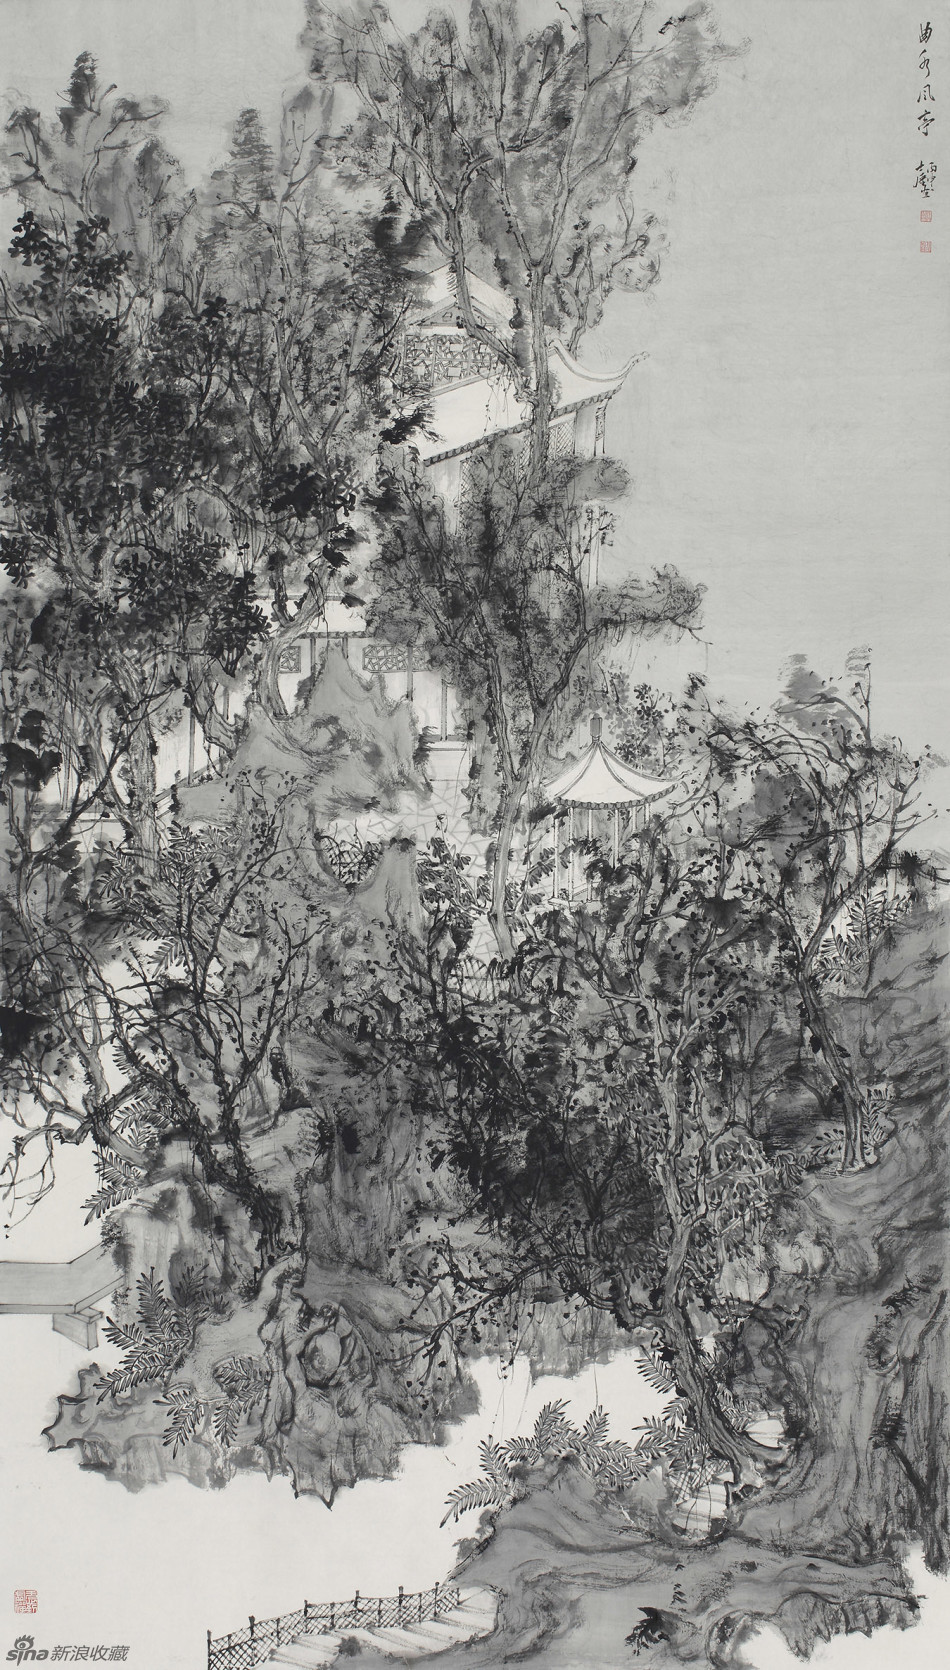 谢士强,1974年生于江苏省睢宁县,1995年毕业于苏州工艺美术学校绘画